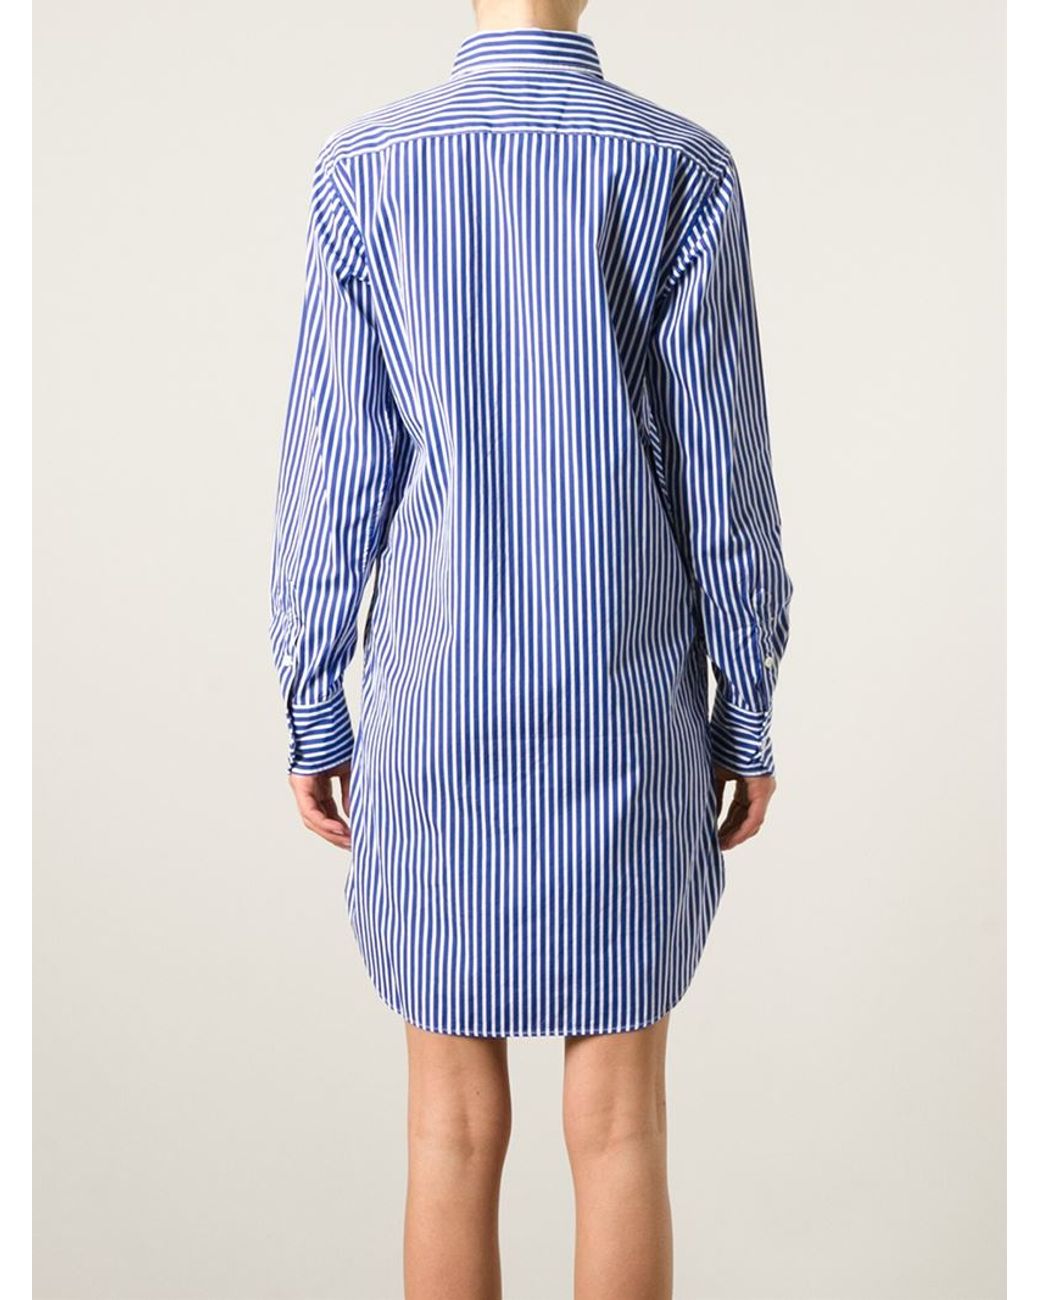 Polo Ralph Lauren Striped Shirt Dress in Blue | Lyst UK